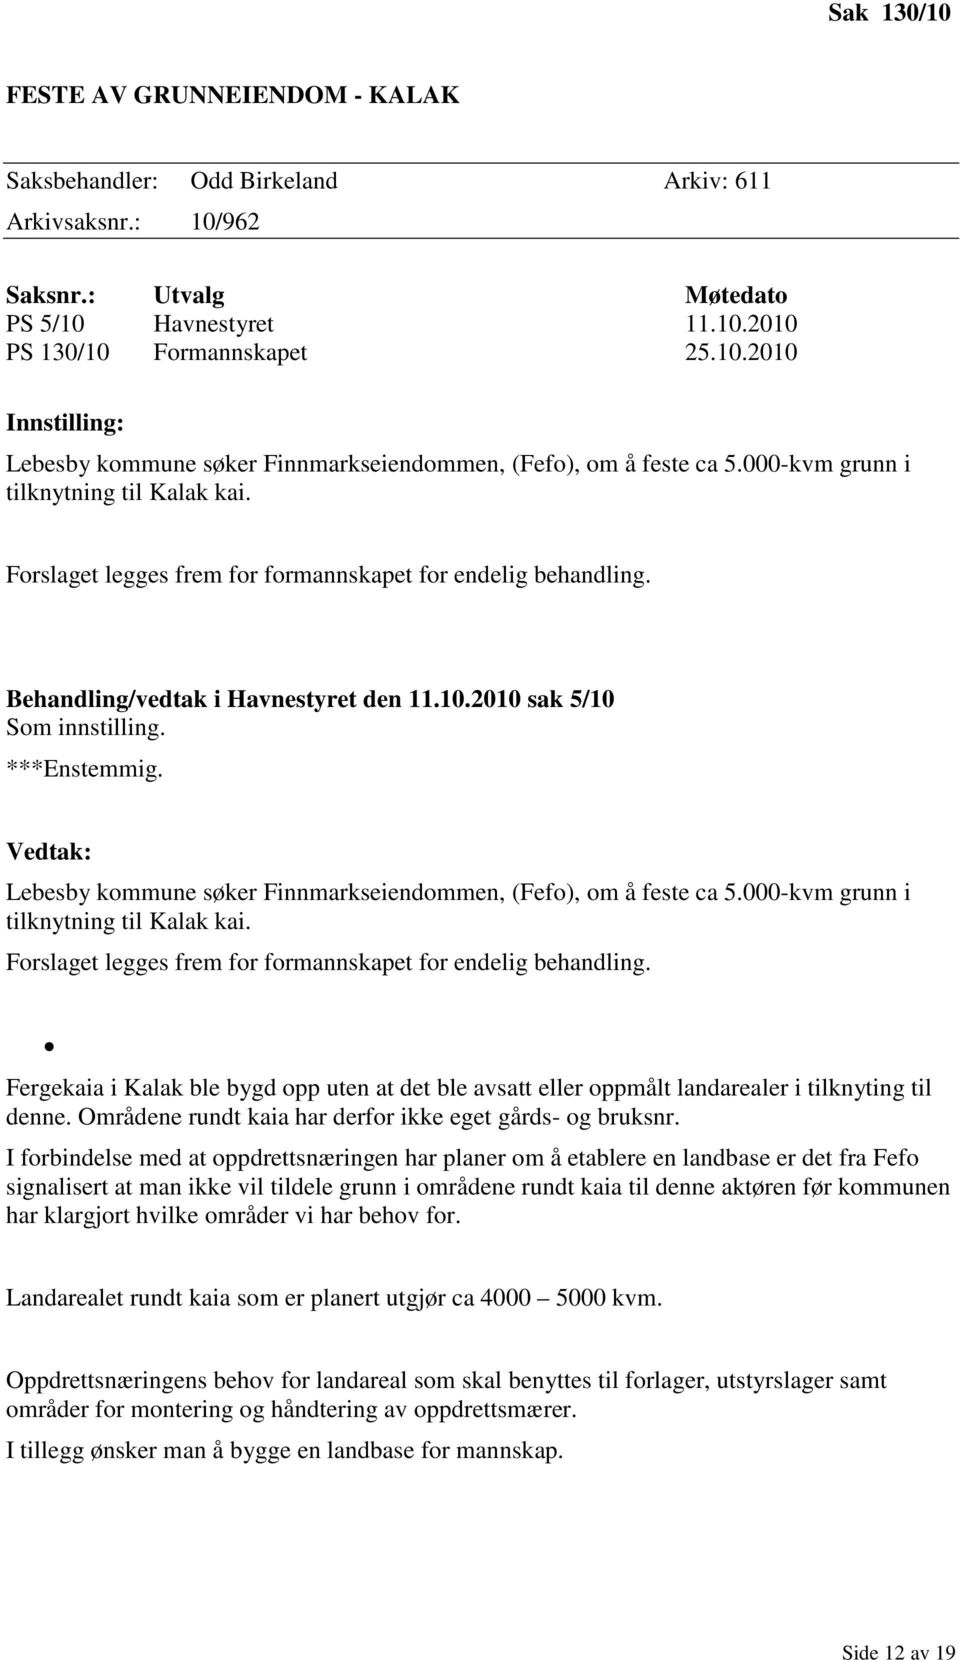 Vedtak: Lebesby kommune søker Finnmarkseiendommen, (Fefo), om å feste ca 5.000-kvm grunn i tilknytning til Kalak kai. Forslaget legges frem for formannskapet for endelig behandling.